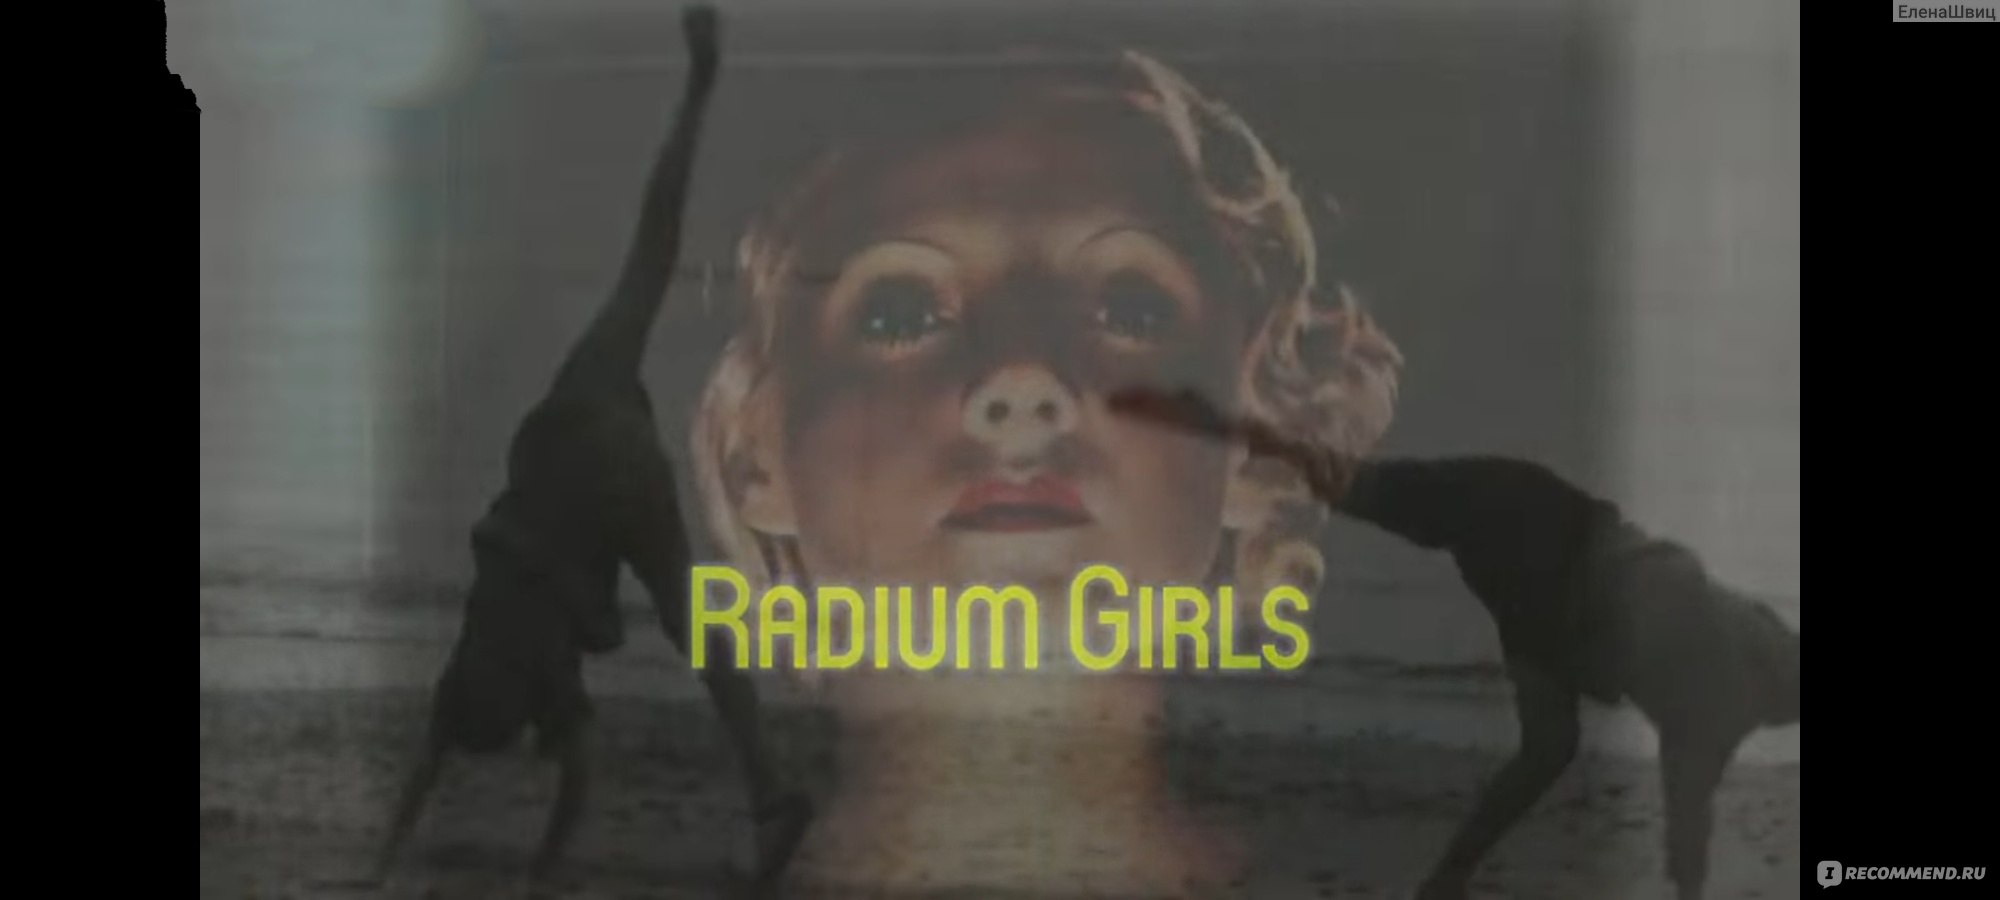 Радиевые девушки/Radium Girls (2018, фильм), отзыв